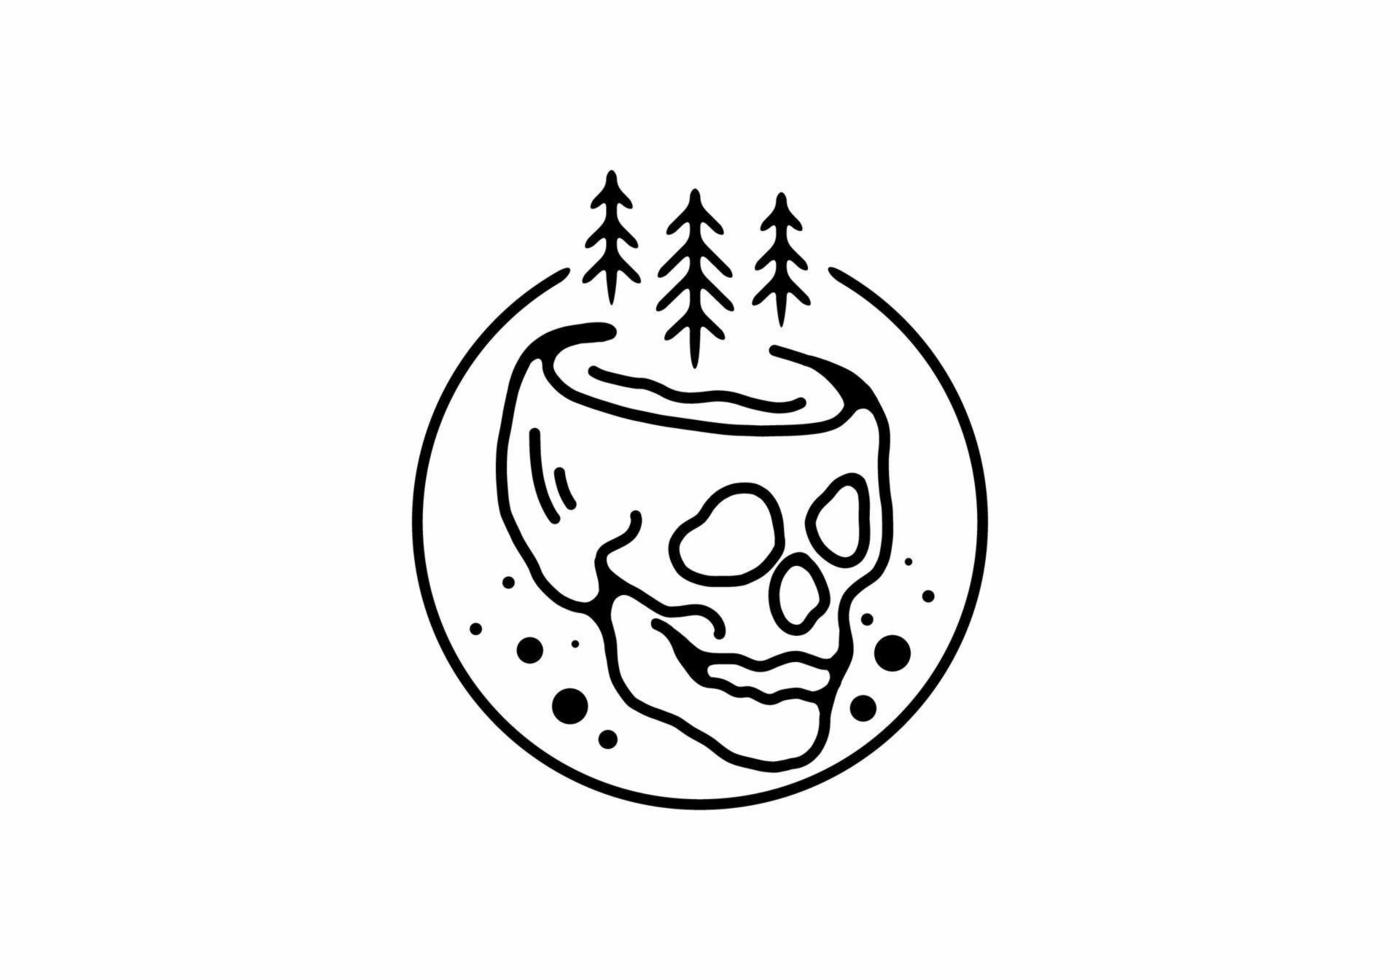 illustrazione di arte al tratto nero della testa di scheletro con alberi di pino a forma di cerchio vettore